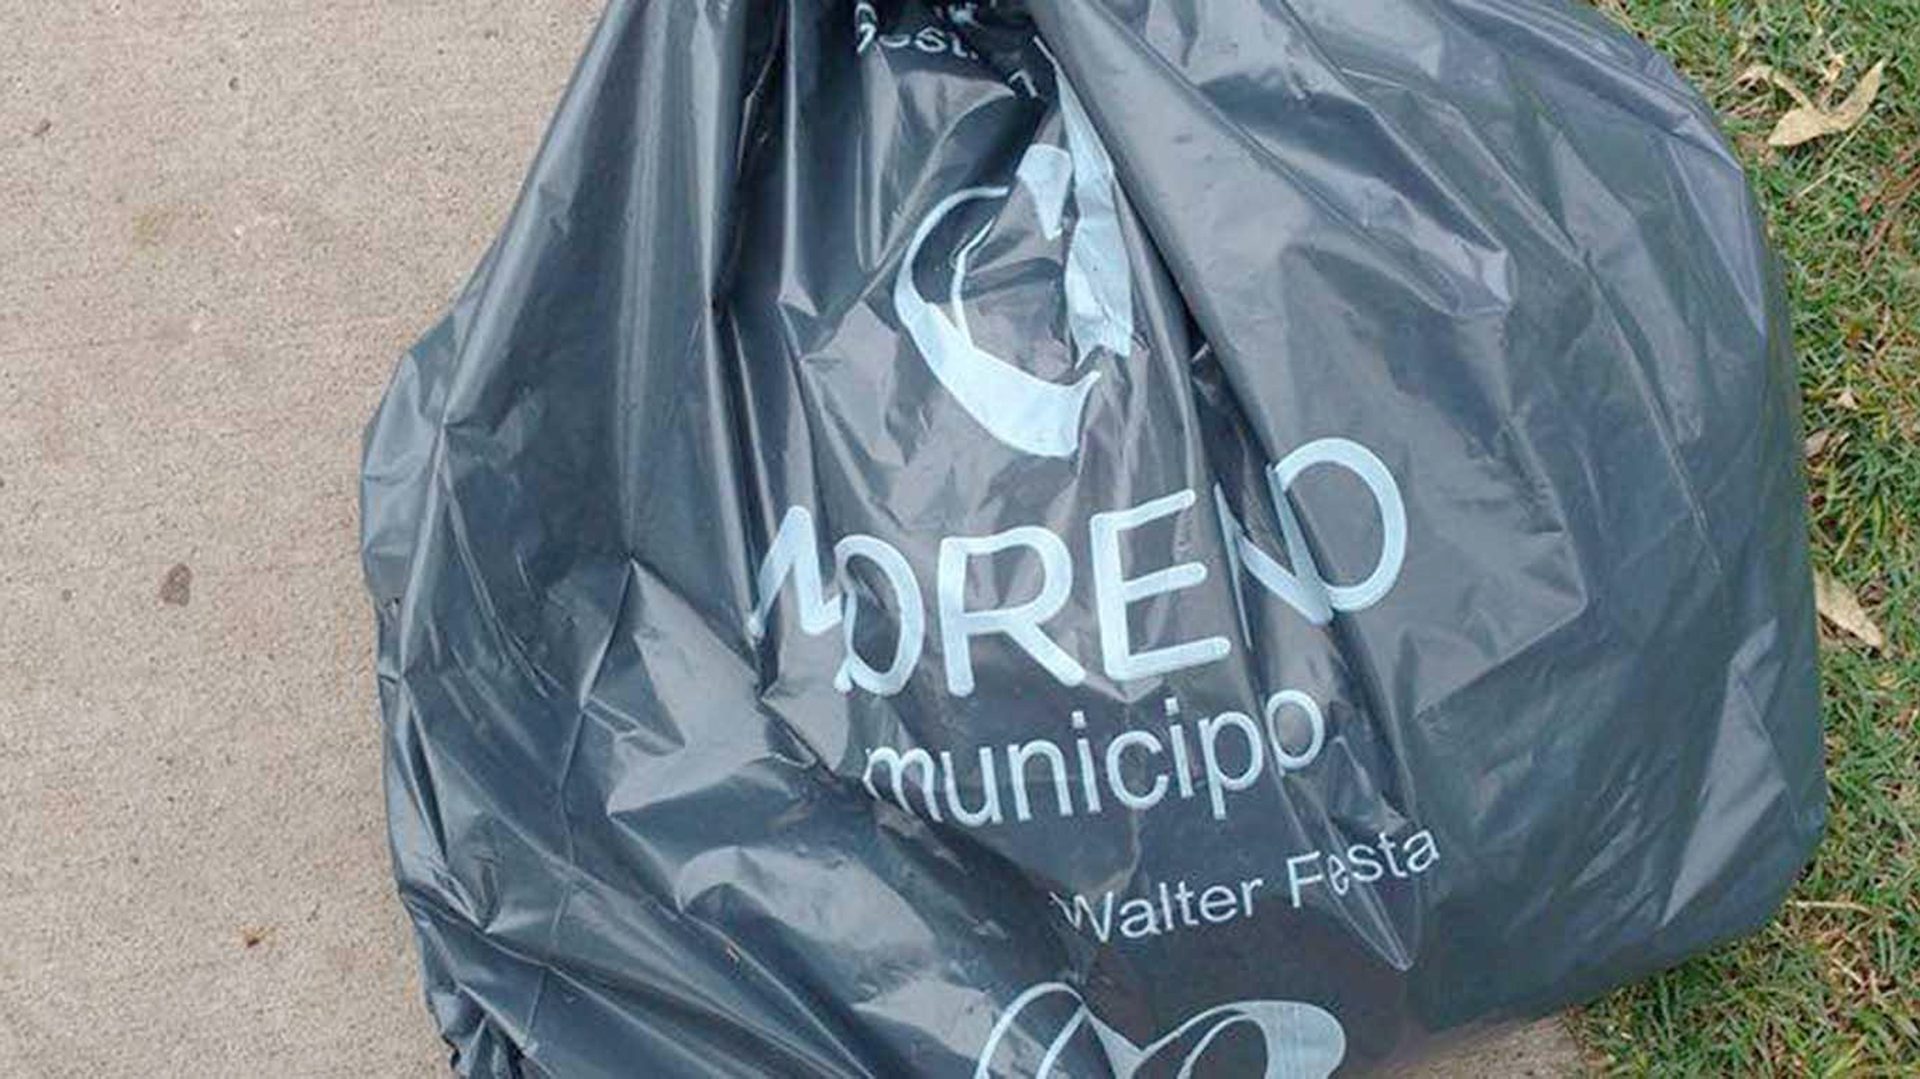 El ex intendente de Moreno, Walter Festa, intentó extender la concesión a la empresa El Trébol